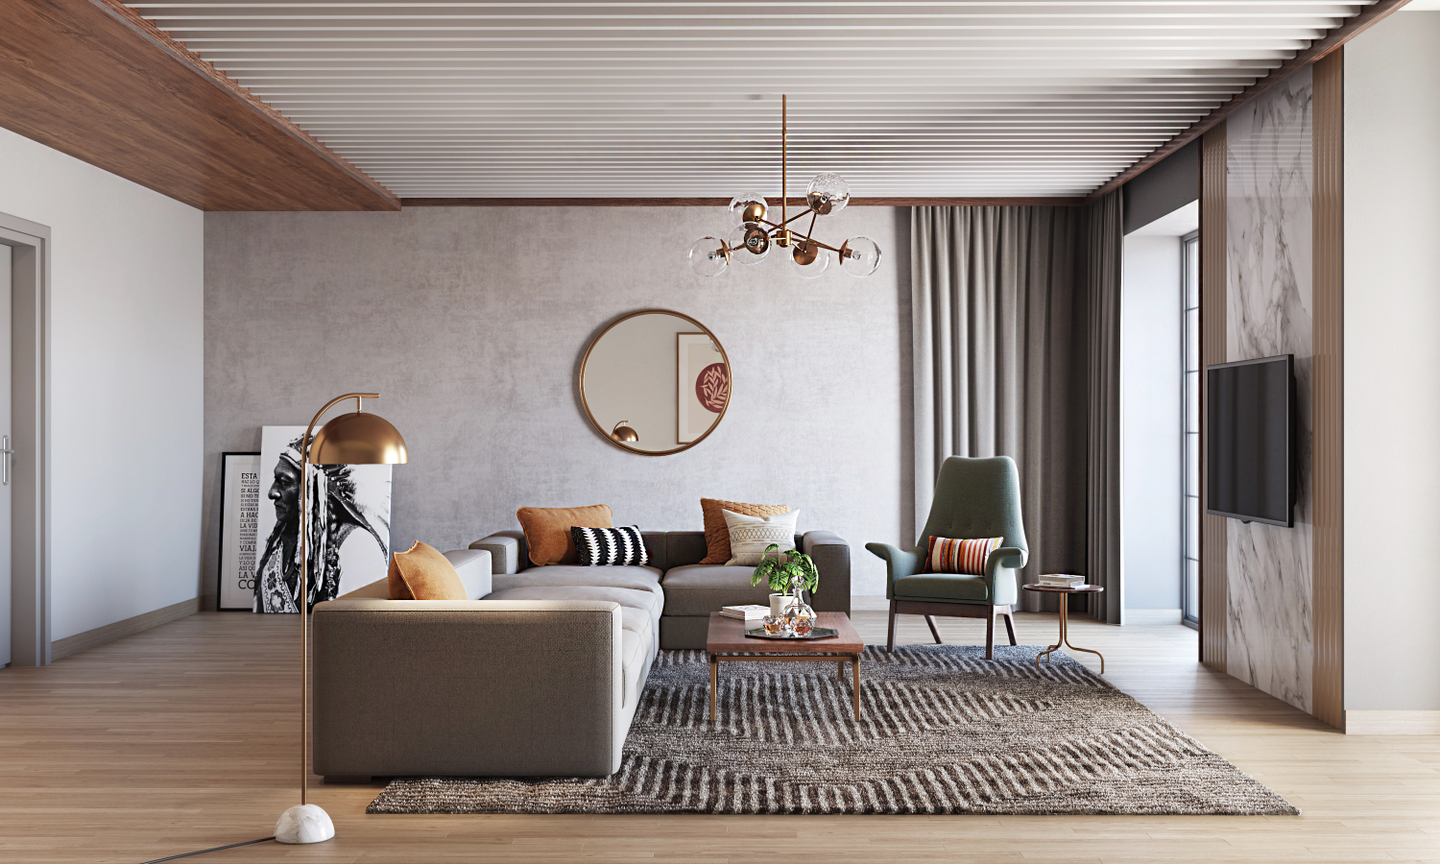 Premium Spacious Living Room Design - Livspace